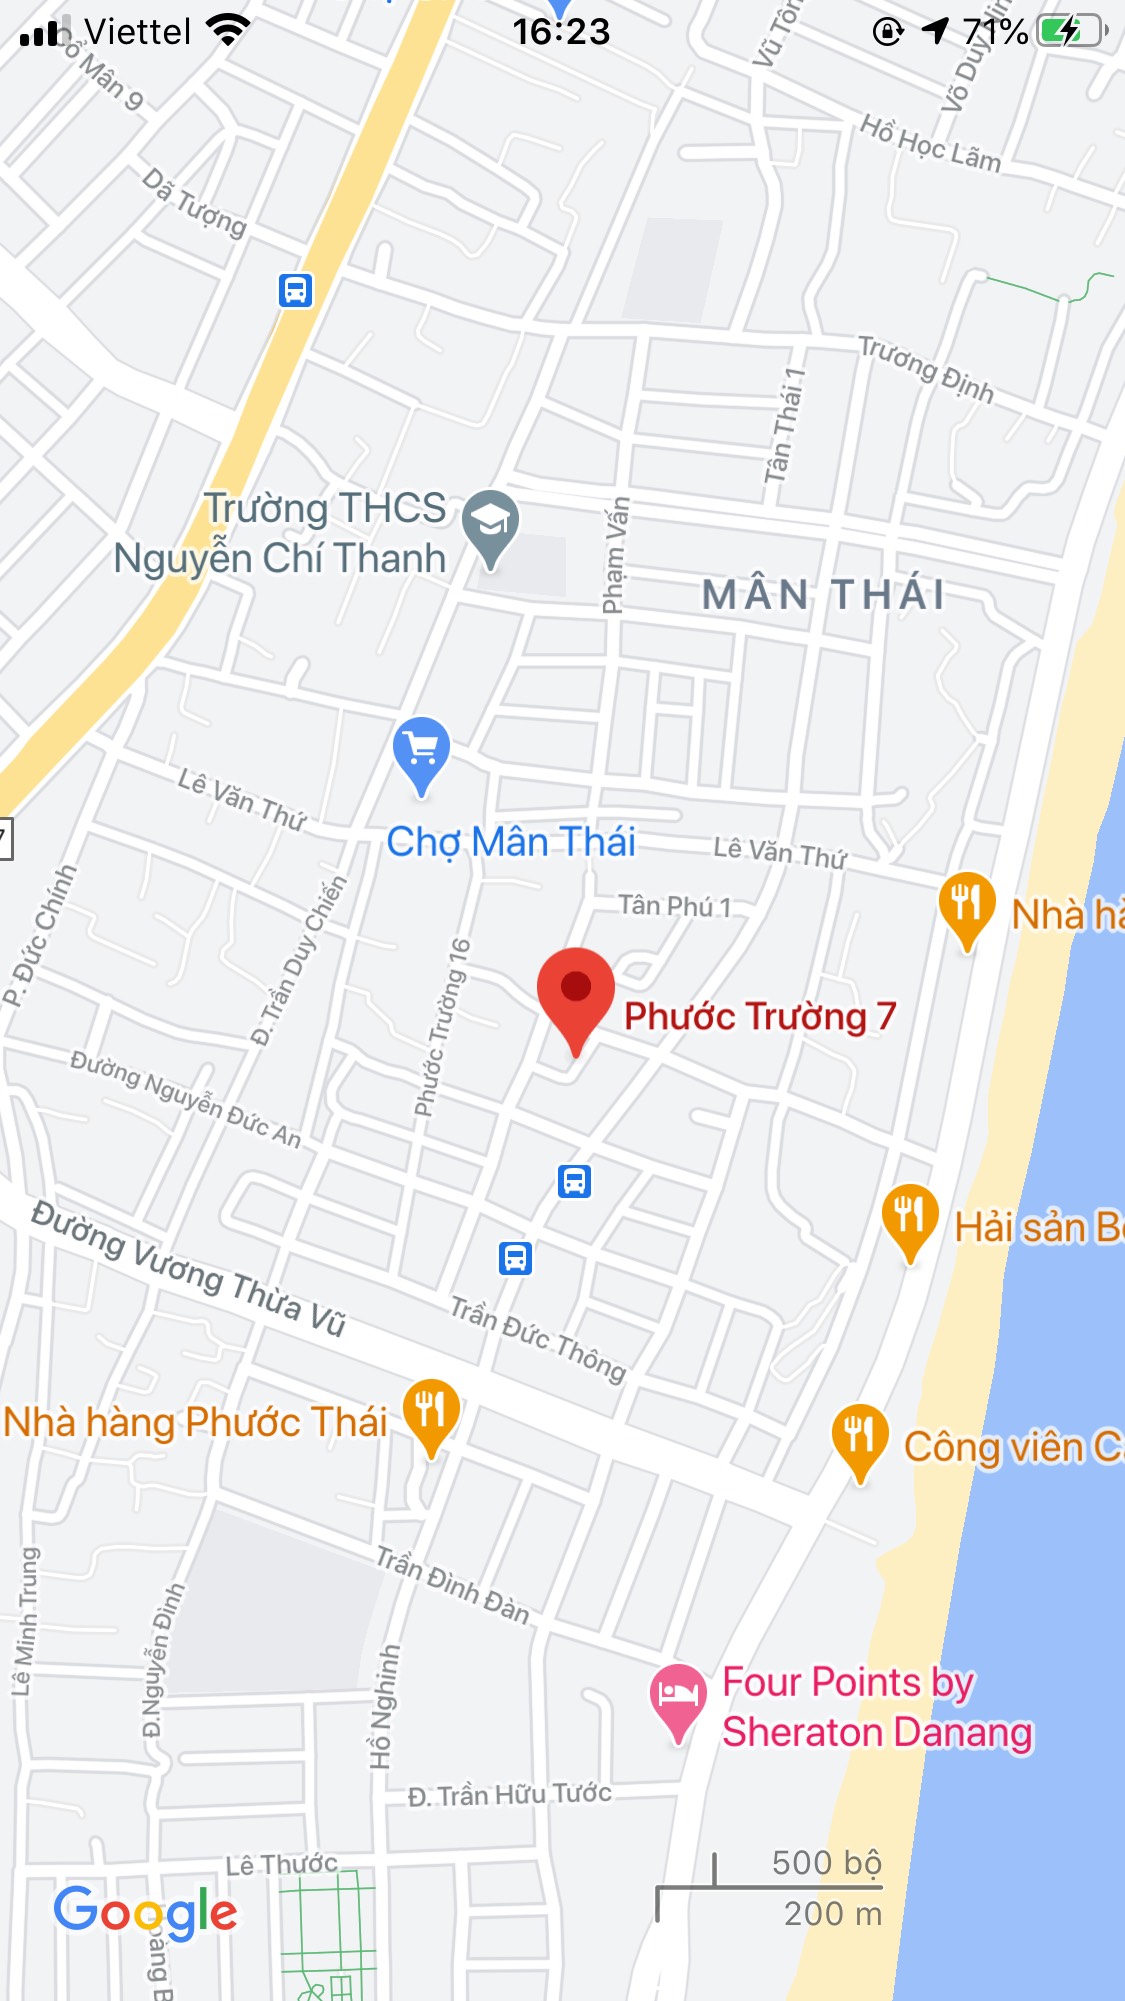 Bán nhà mặt tiền đường Phước Trường 7, Quận Sơn Trà DT: 80 m2. Giá: 5,2 tỷ